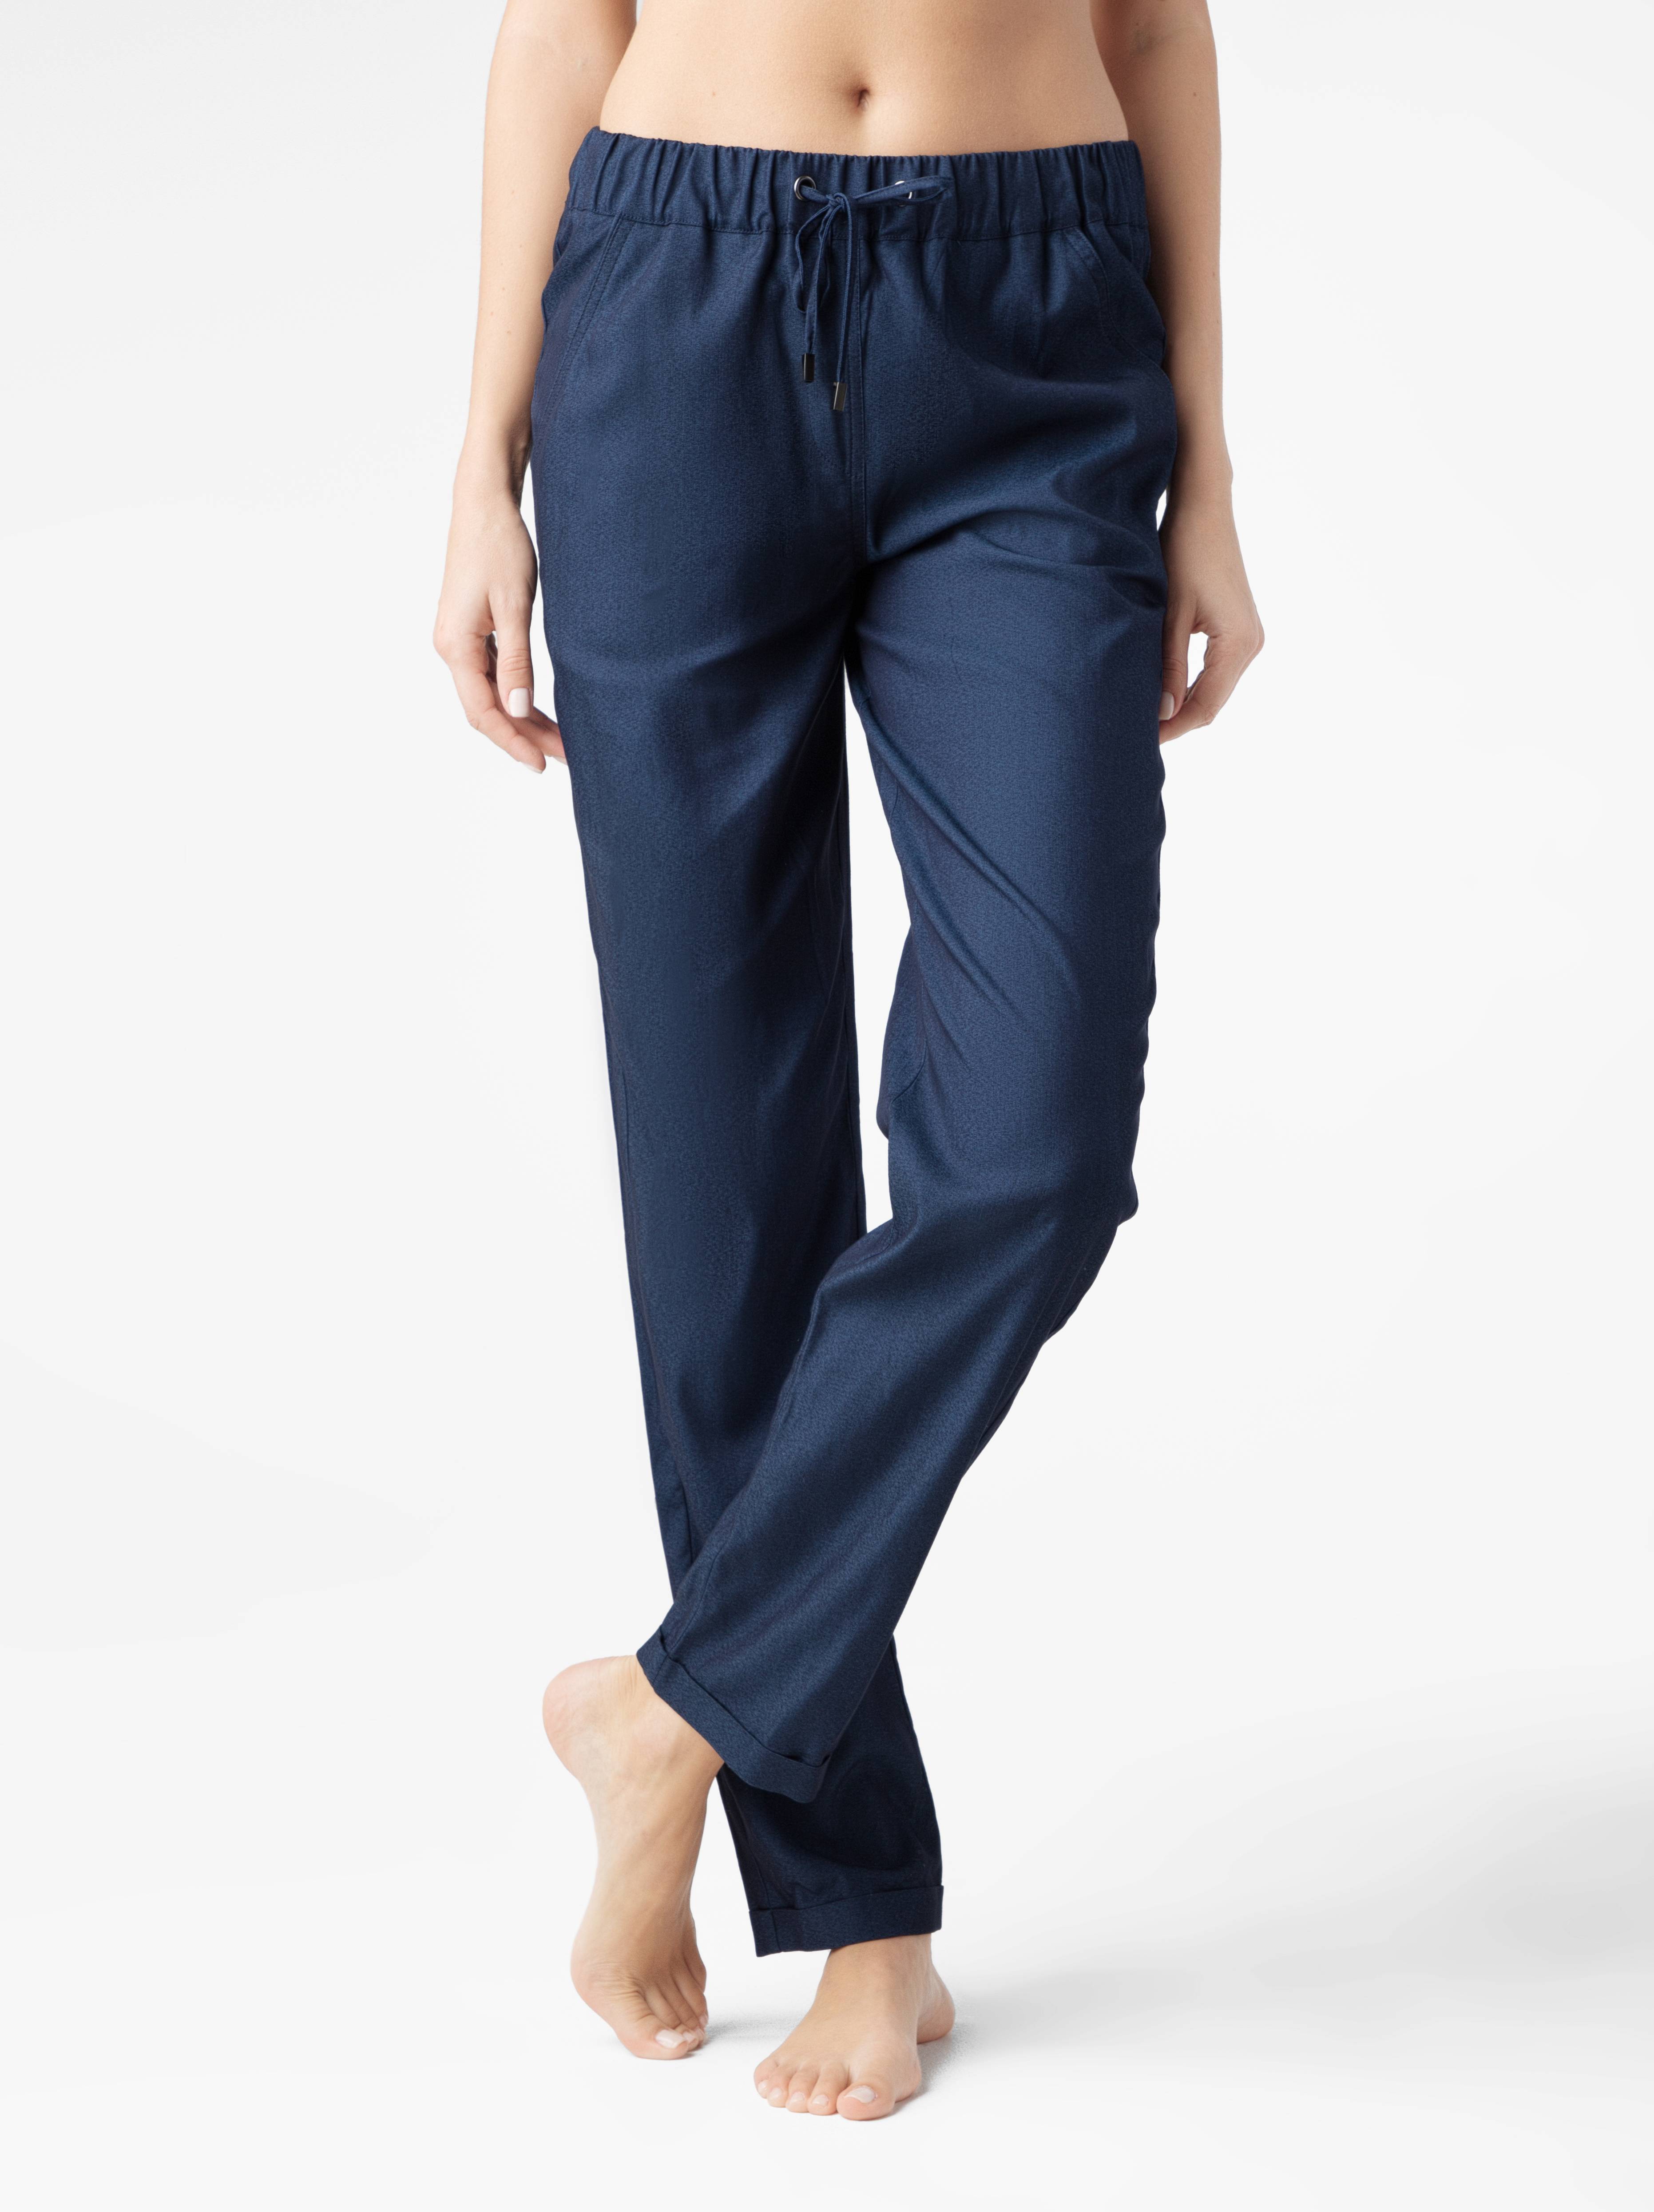 Джинсовые брюки с манжетами DENIMANIA Conte ⭐️, цвет blue, размер 164-100-106 - фото 1